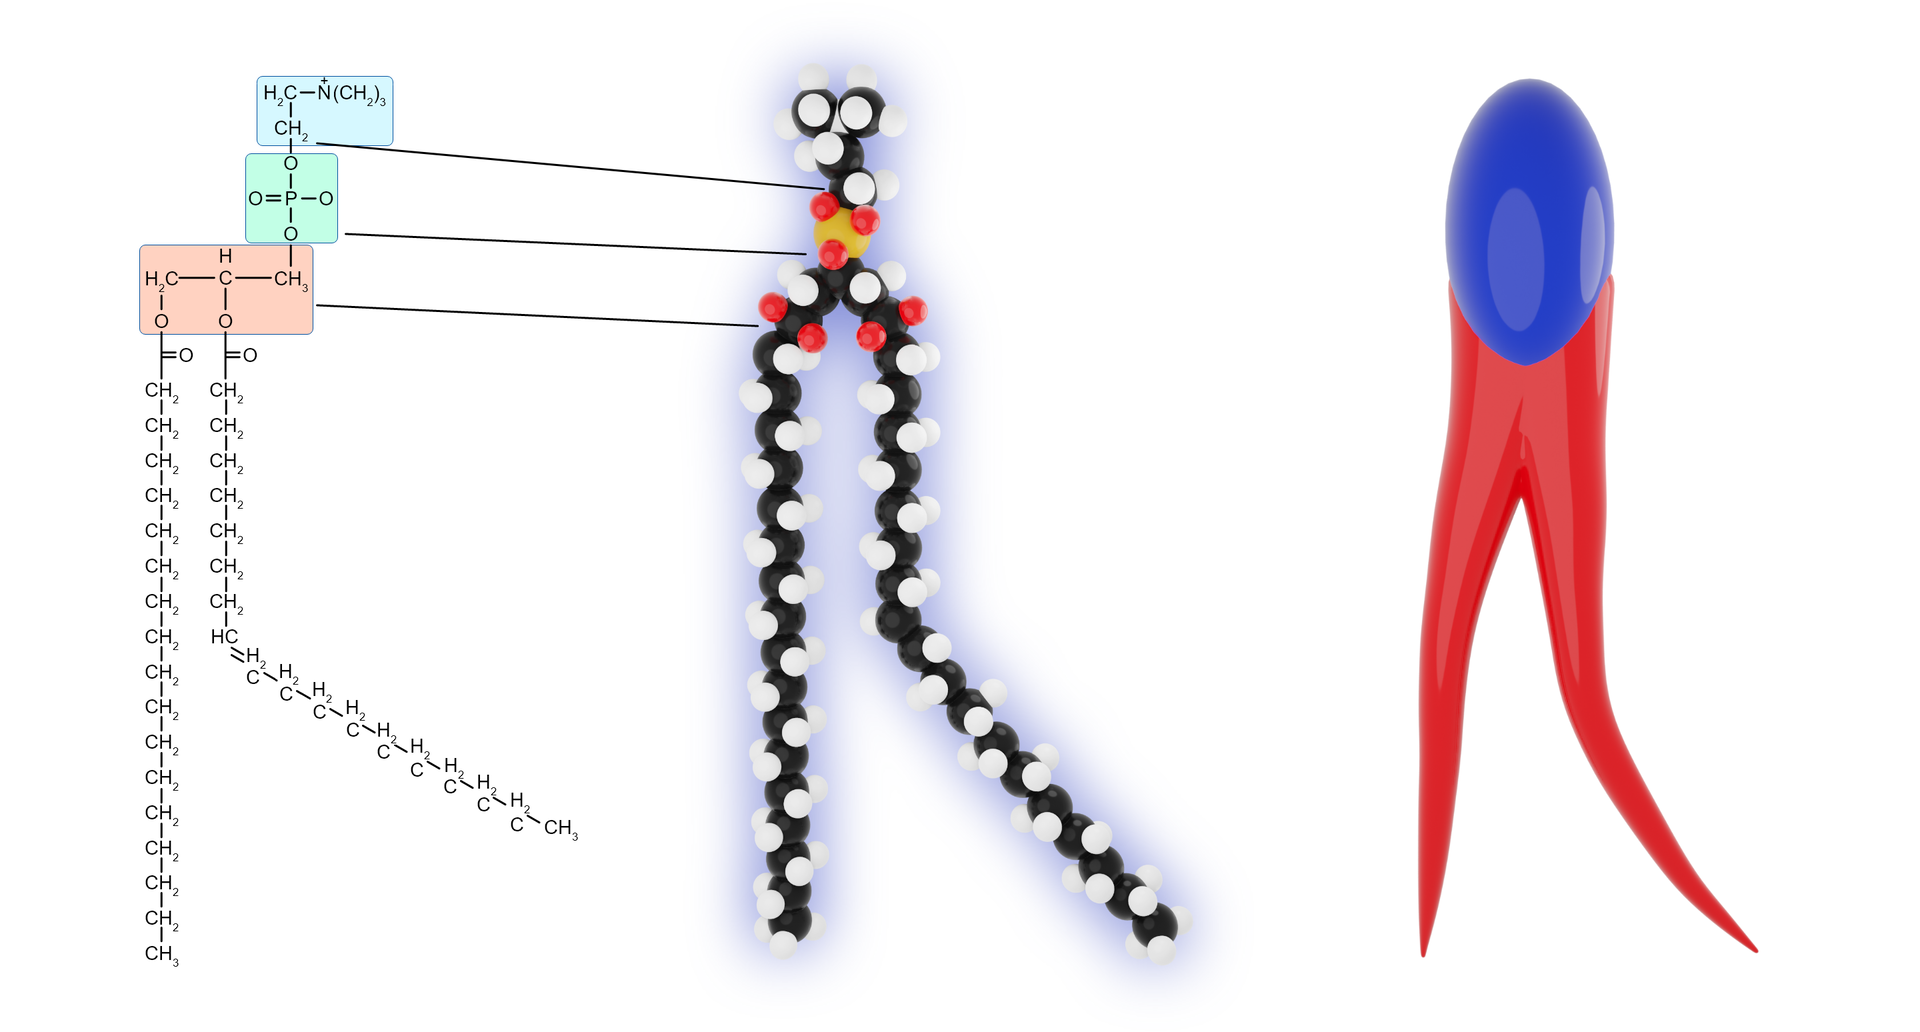 Grafika przedstawia wzór chemiczny i schemat struktury przestrzennej fosfolipidu. Fosfolipid zbudowany jest z cząsteczki glicerolu połączonej z dwiema cząstkami kwasów tłuszczowych, grupą fosforanową oraz cząsteczką alkoholu zlokalizowaną na szczycie cząsteczki. Jej ułożenie przestrzenne przypomina kijankę o dwóch ogonkach. Składa się z okrągłej części górnej oraz dwóch długich nici zwężających się ku dołowi. 